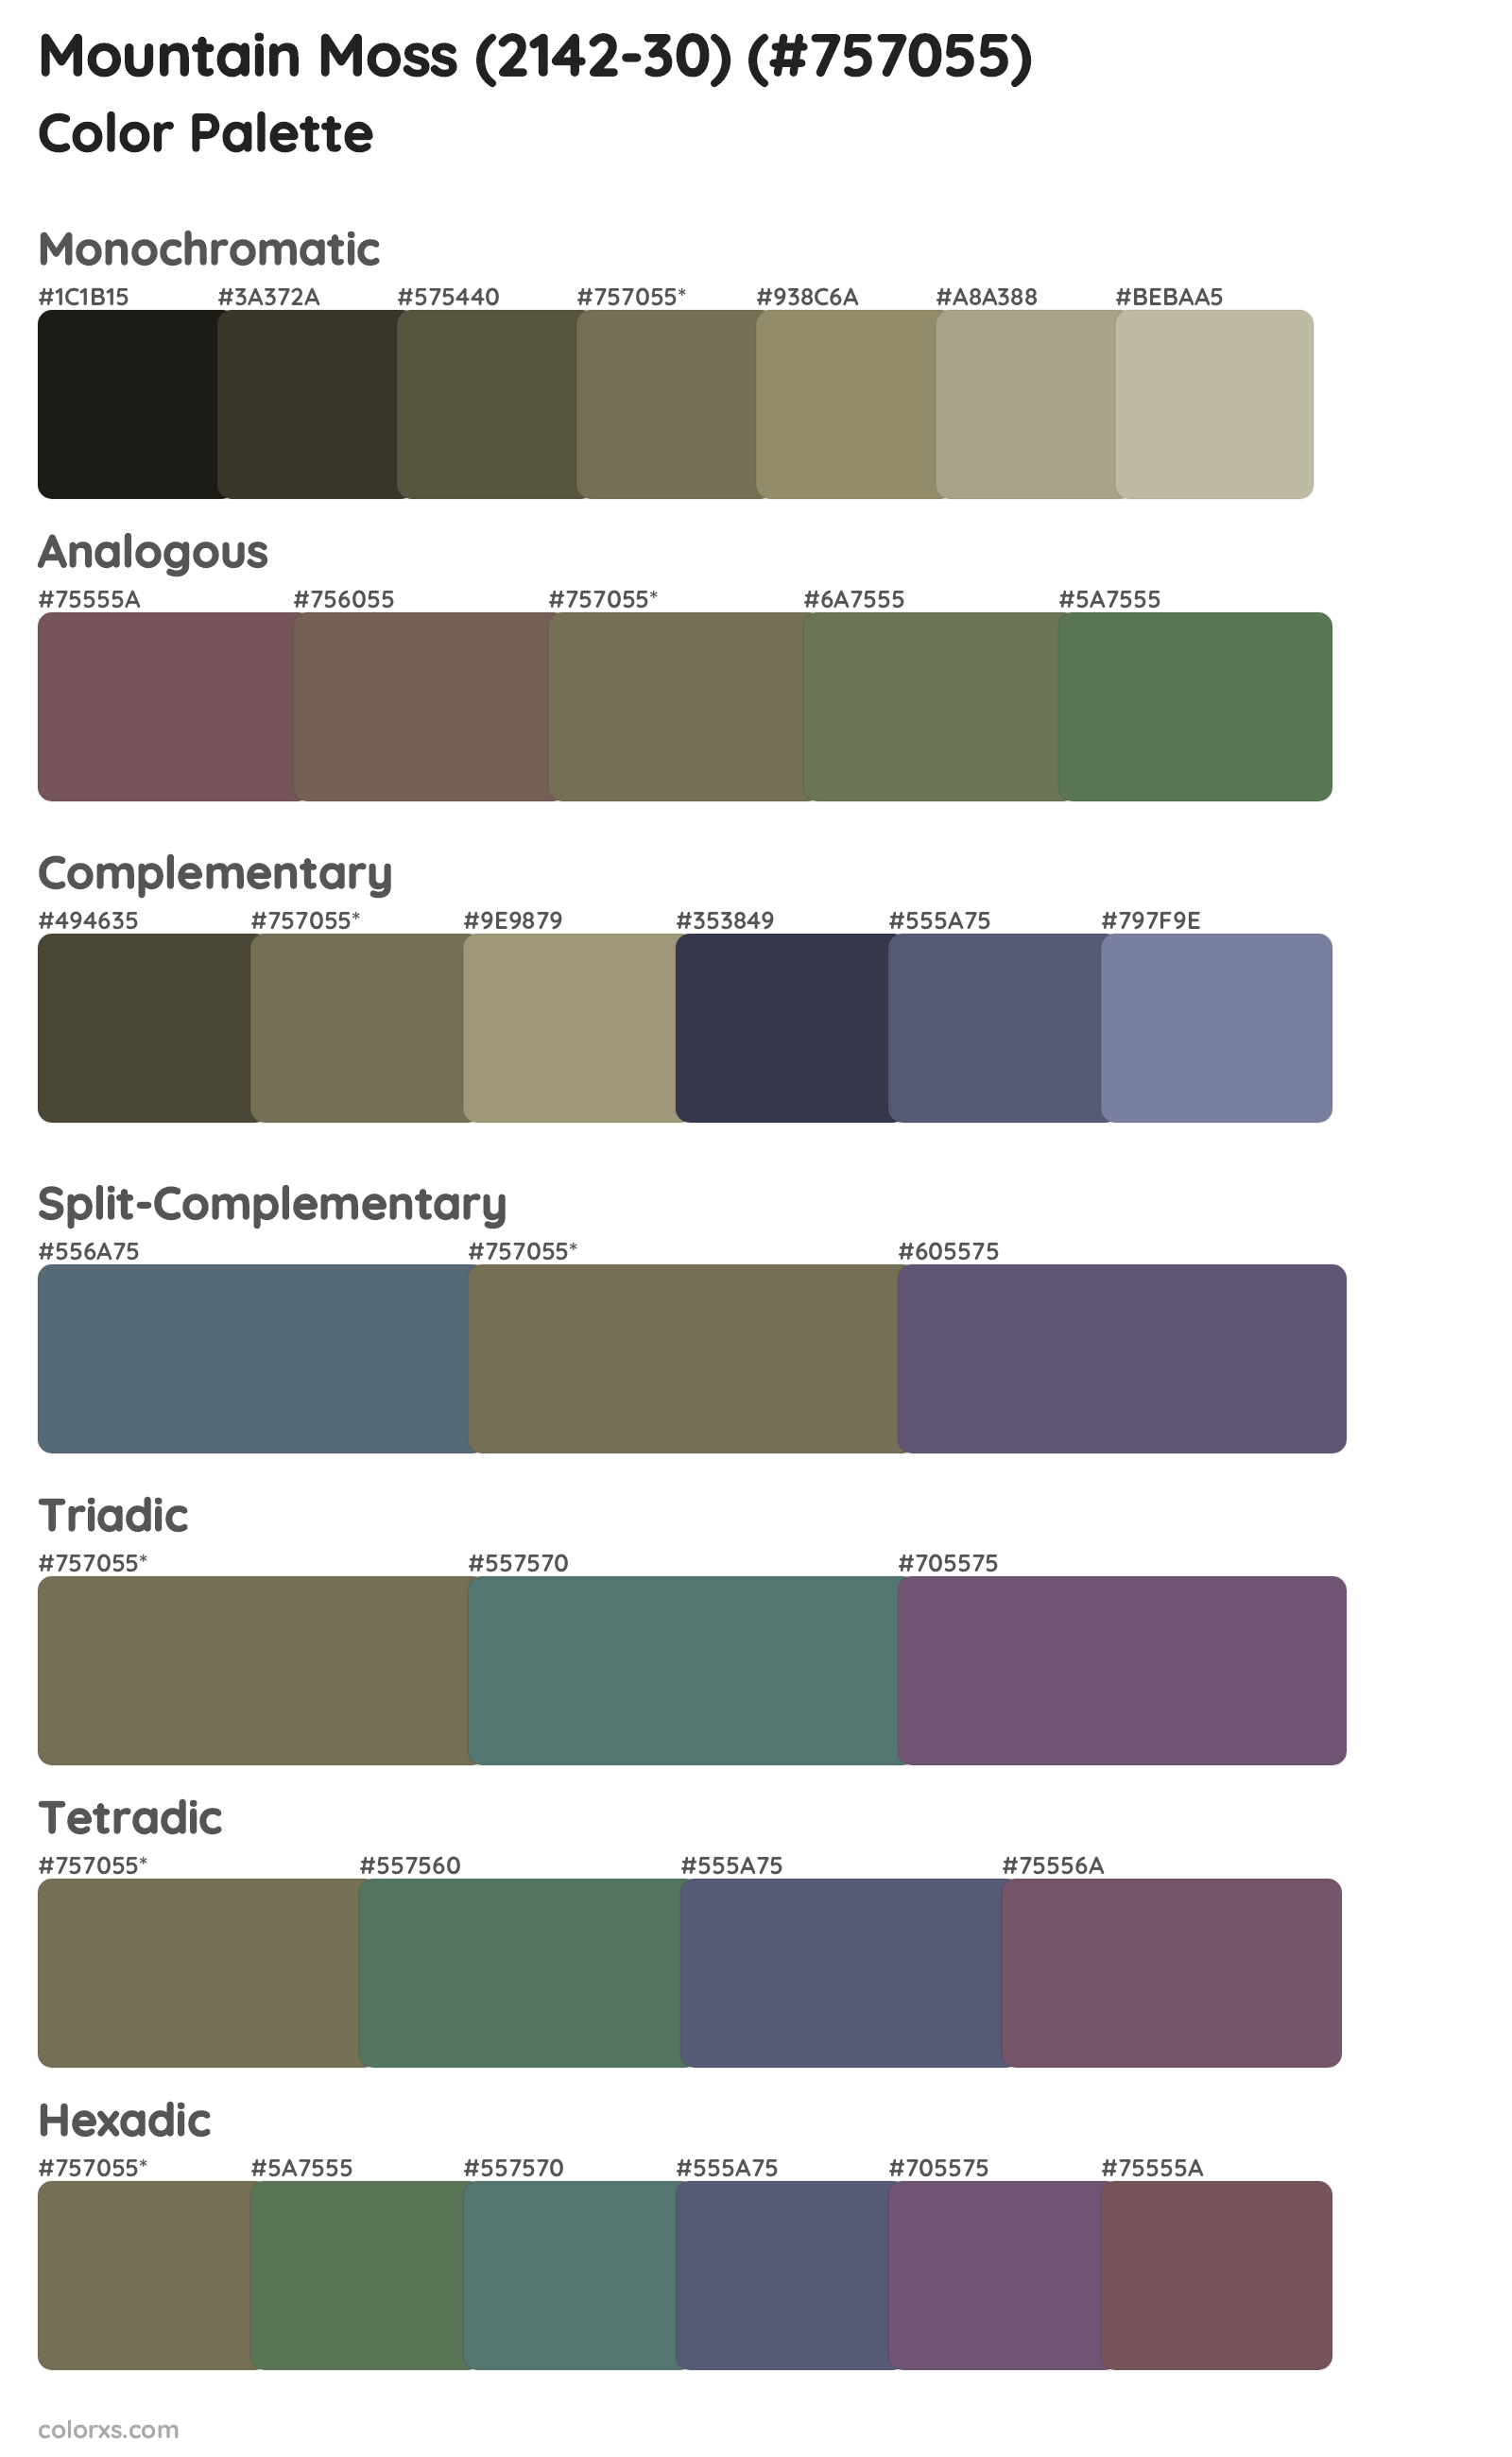 Mountain Moss (2142-30) Color Scheme Palettes